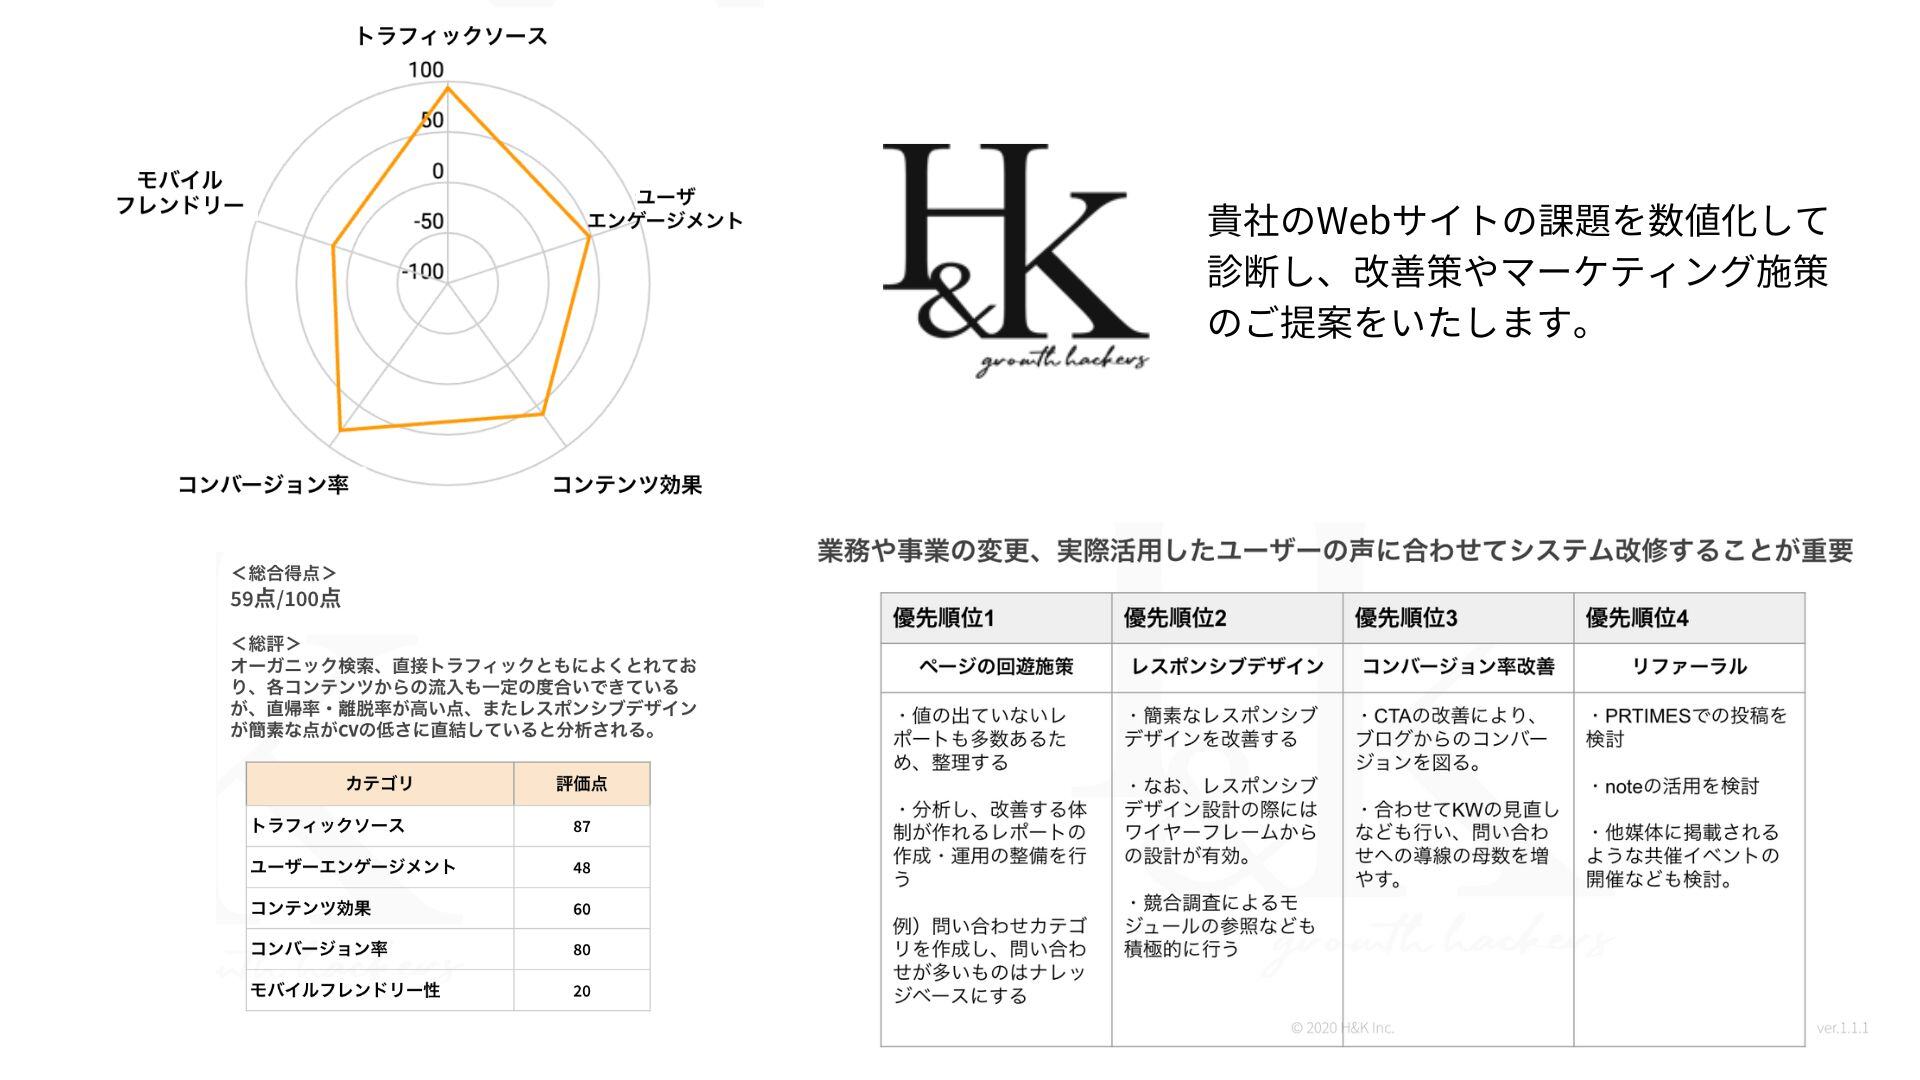 株式会社H&K _Webサイト診断 (1)